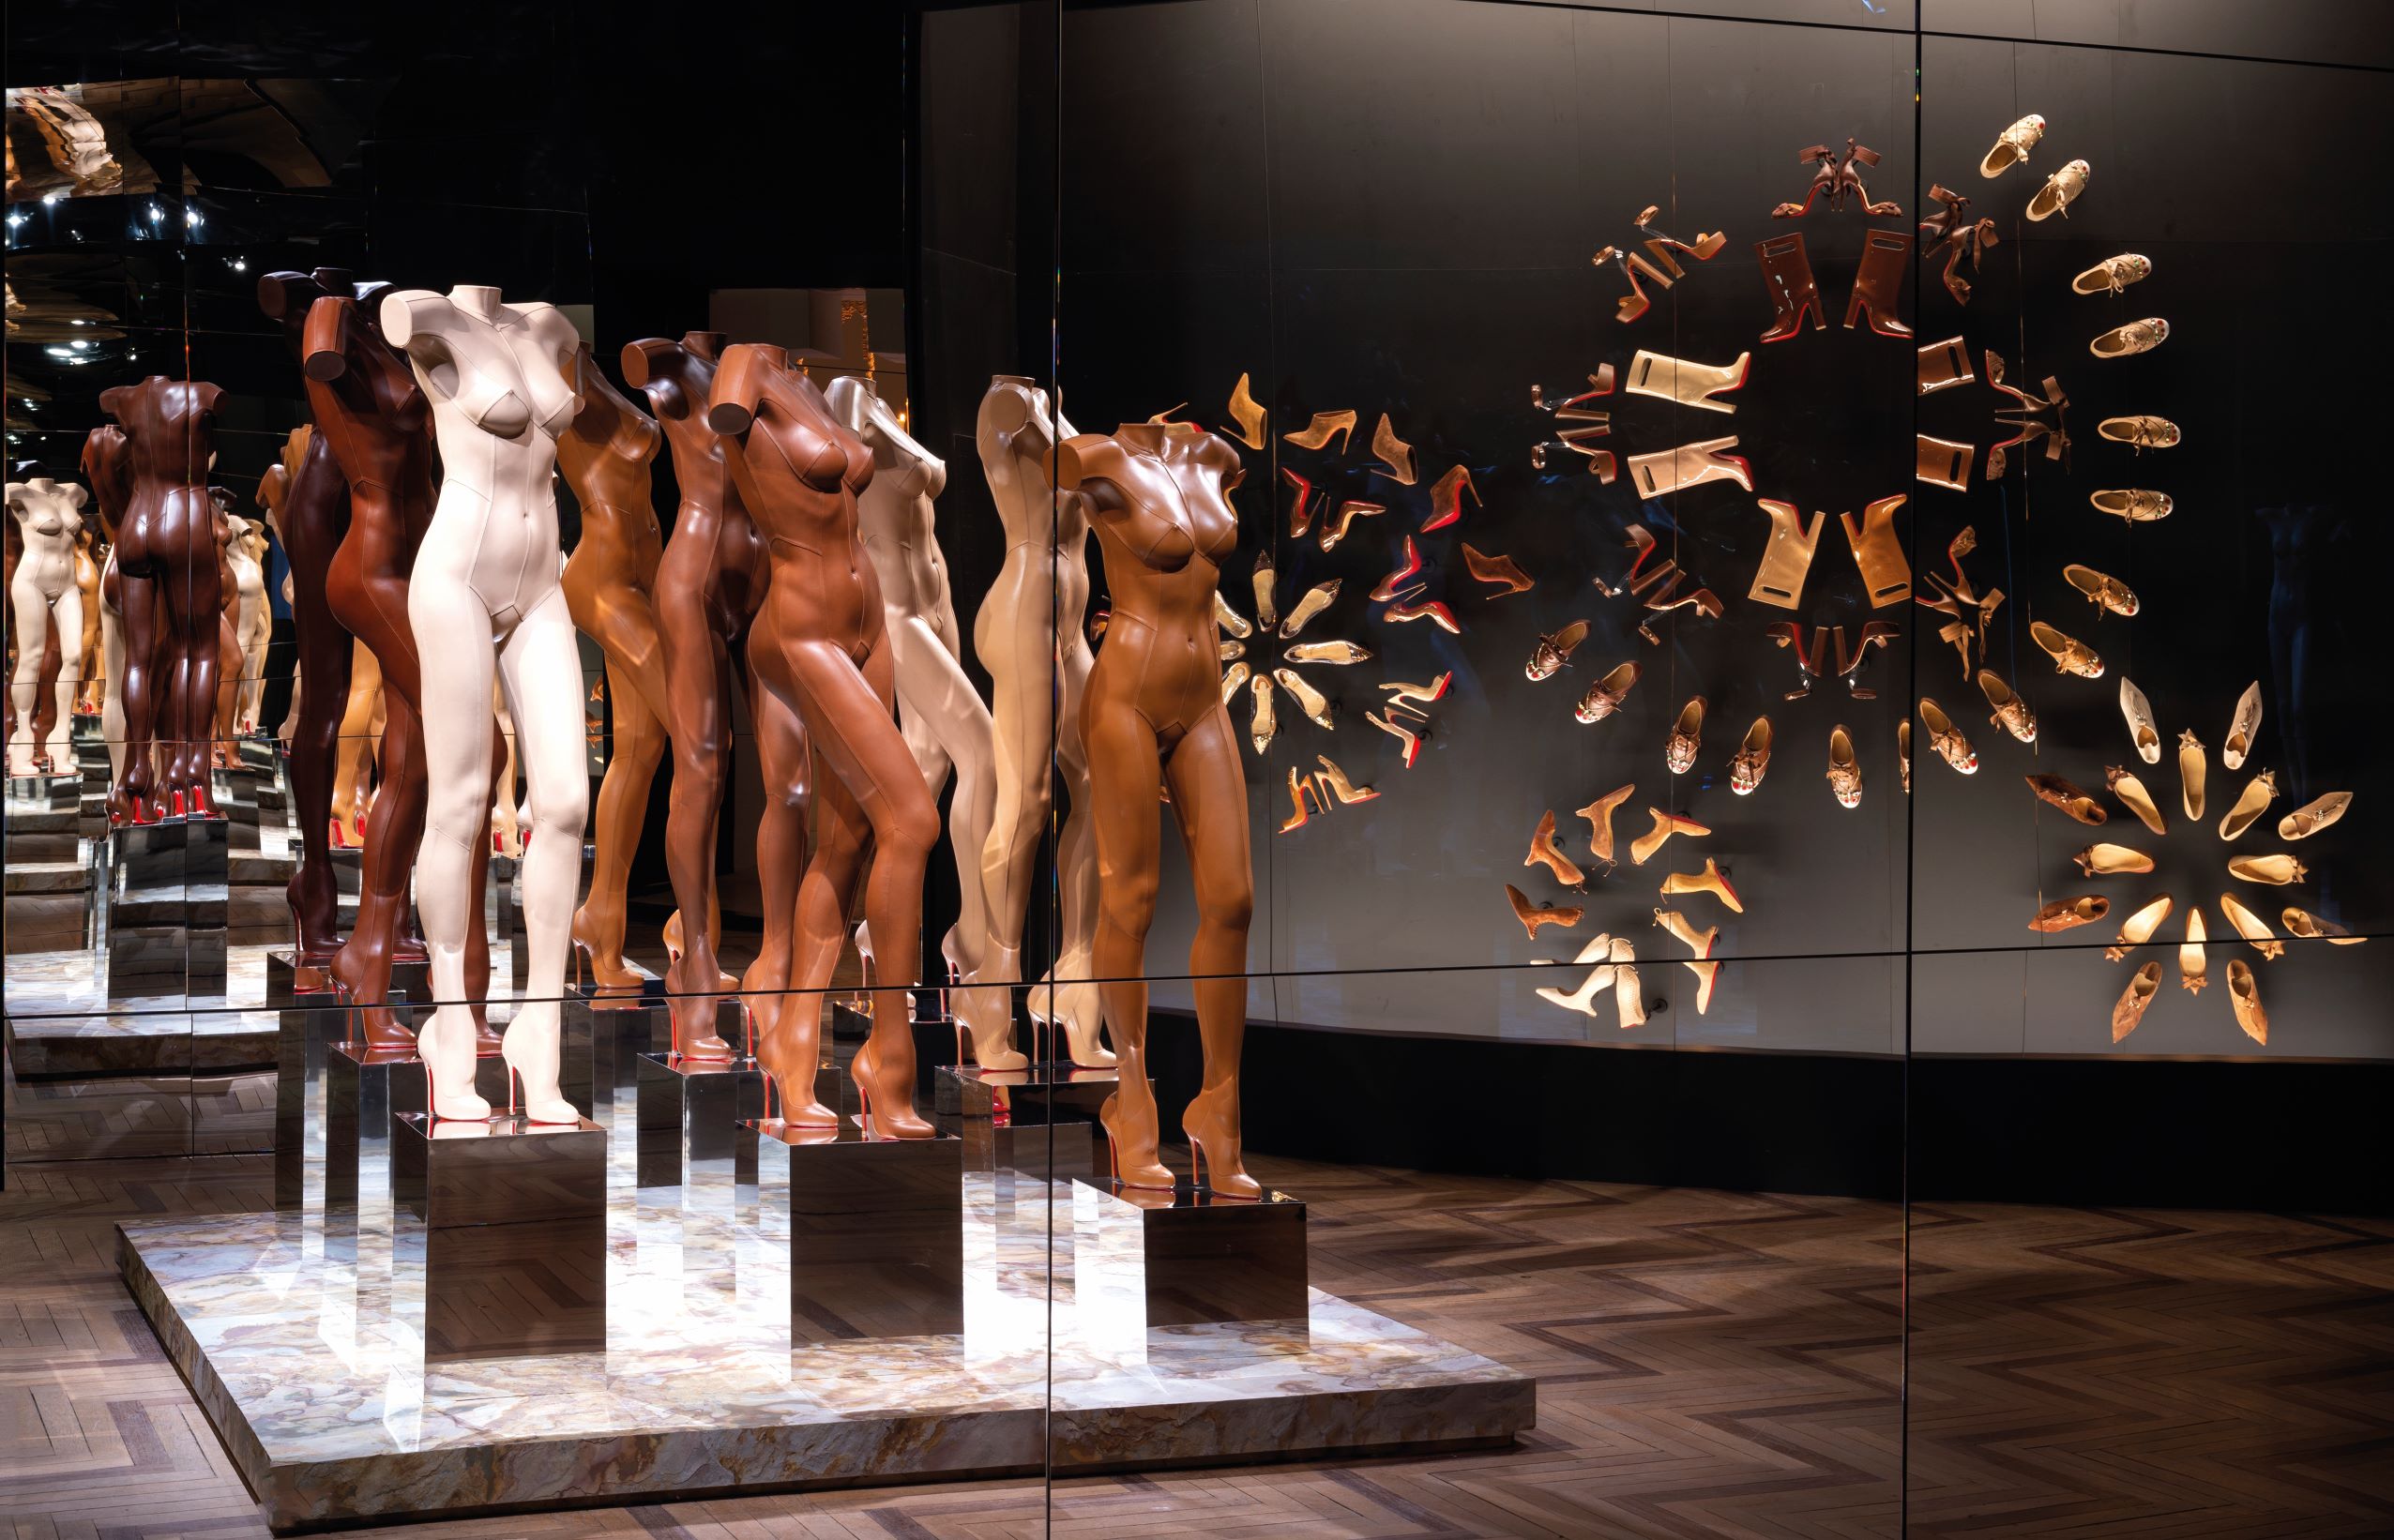 著名的 Nudes 裸色系列展間，邀請英國的藝術雙人組 Whitaker/Malem 製作九件不同膚色皮衣雕塑並至展出，視覺效果強烈。